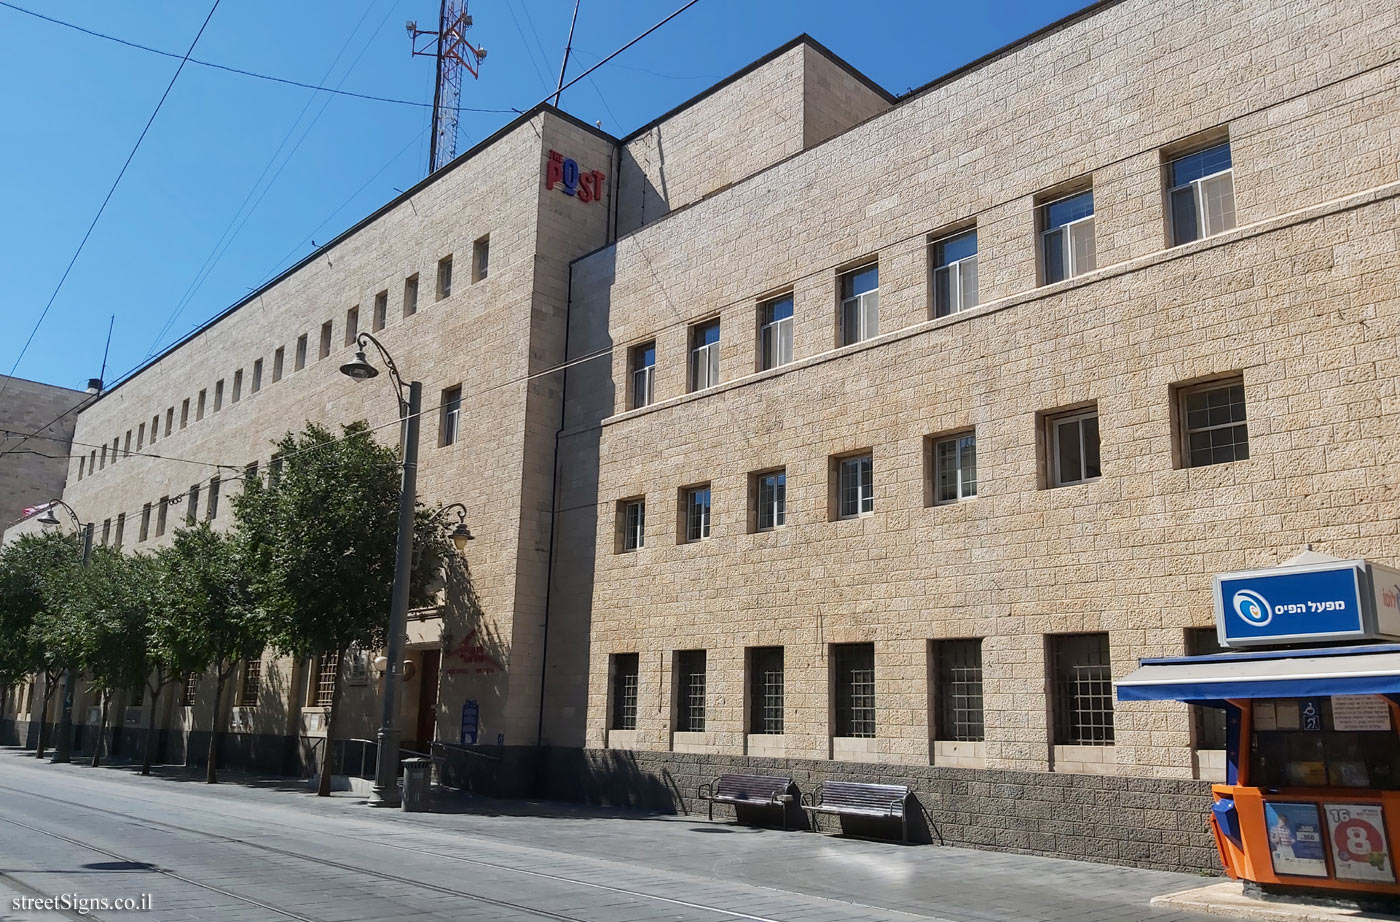 Jerusalem - Heritage Sites in Israel - Central Post Office - Jaffa St 23, Jerusalem, Israel